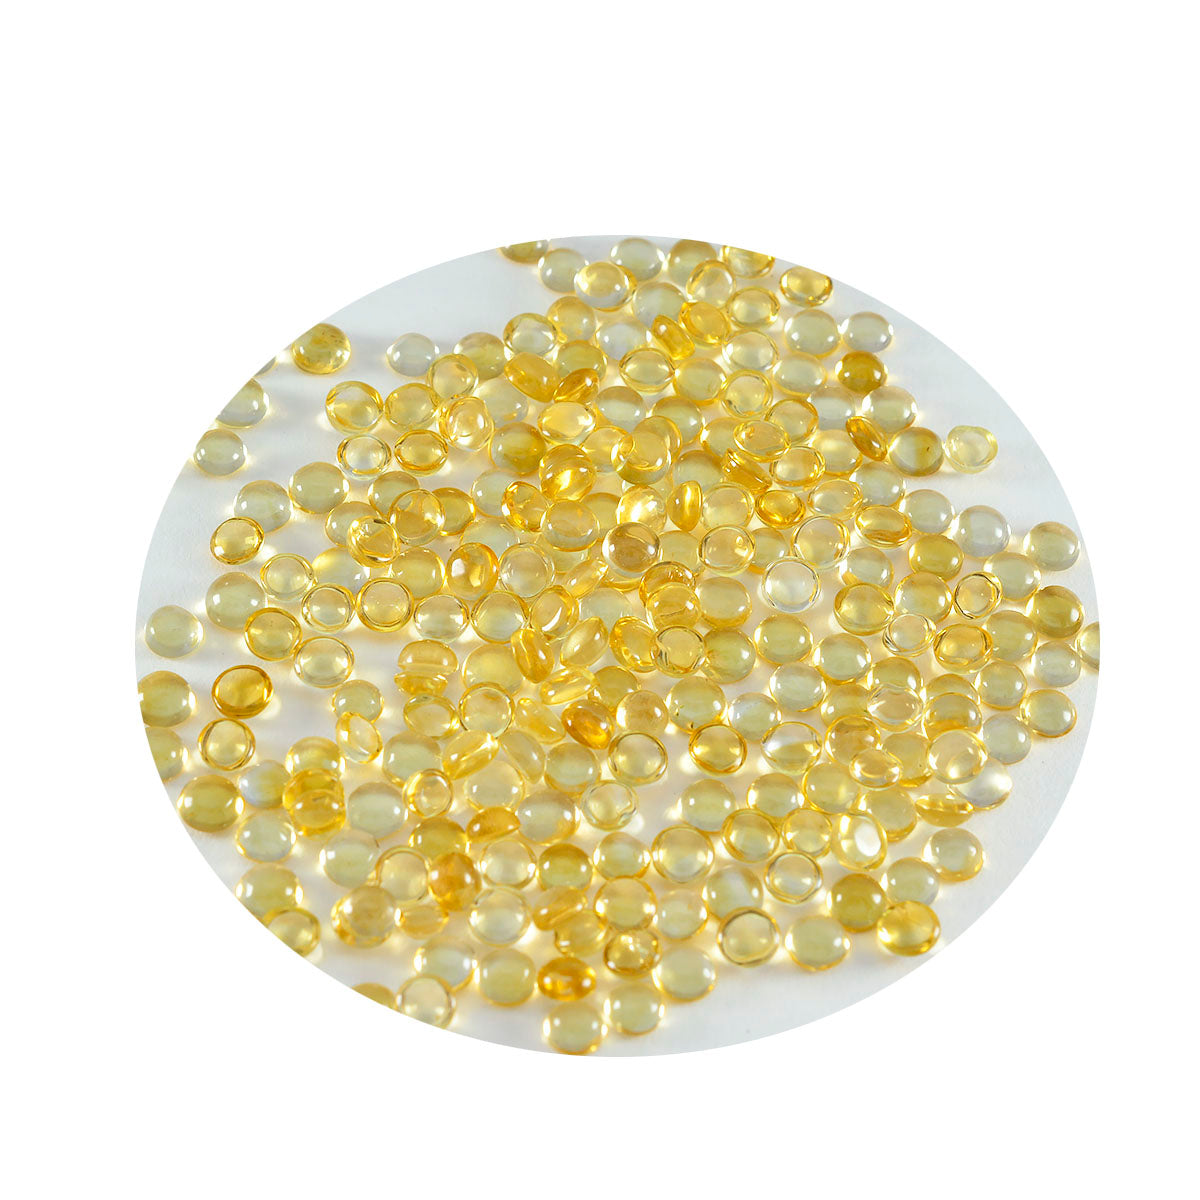 riyogems 1 cabochon di citrino giallo da 3x3 mm di forma rotonda, pietra preziosa sfusa di bella qualità